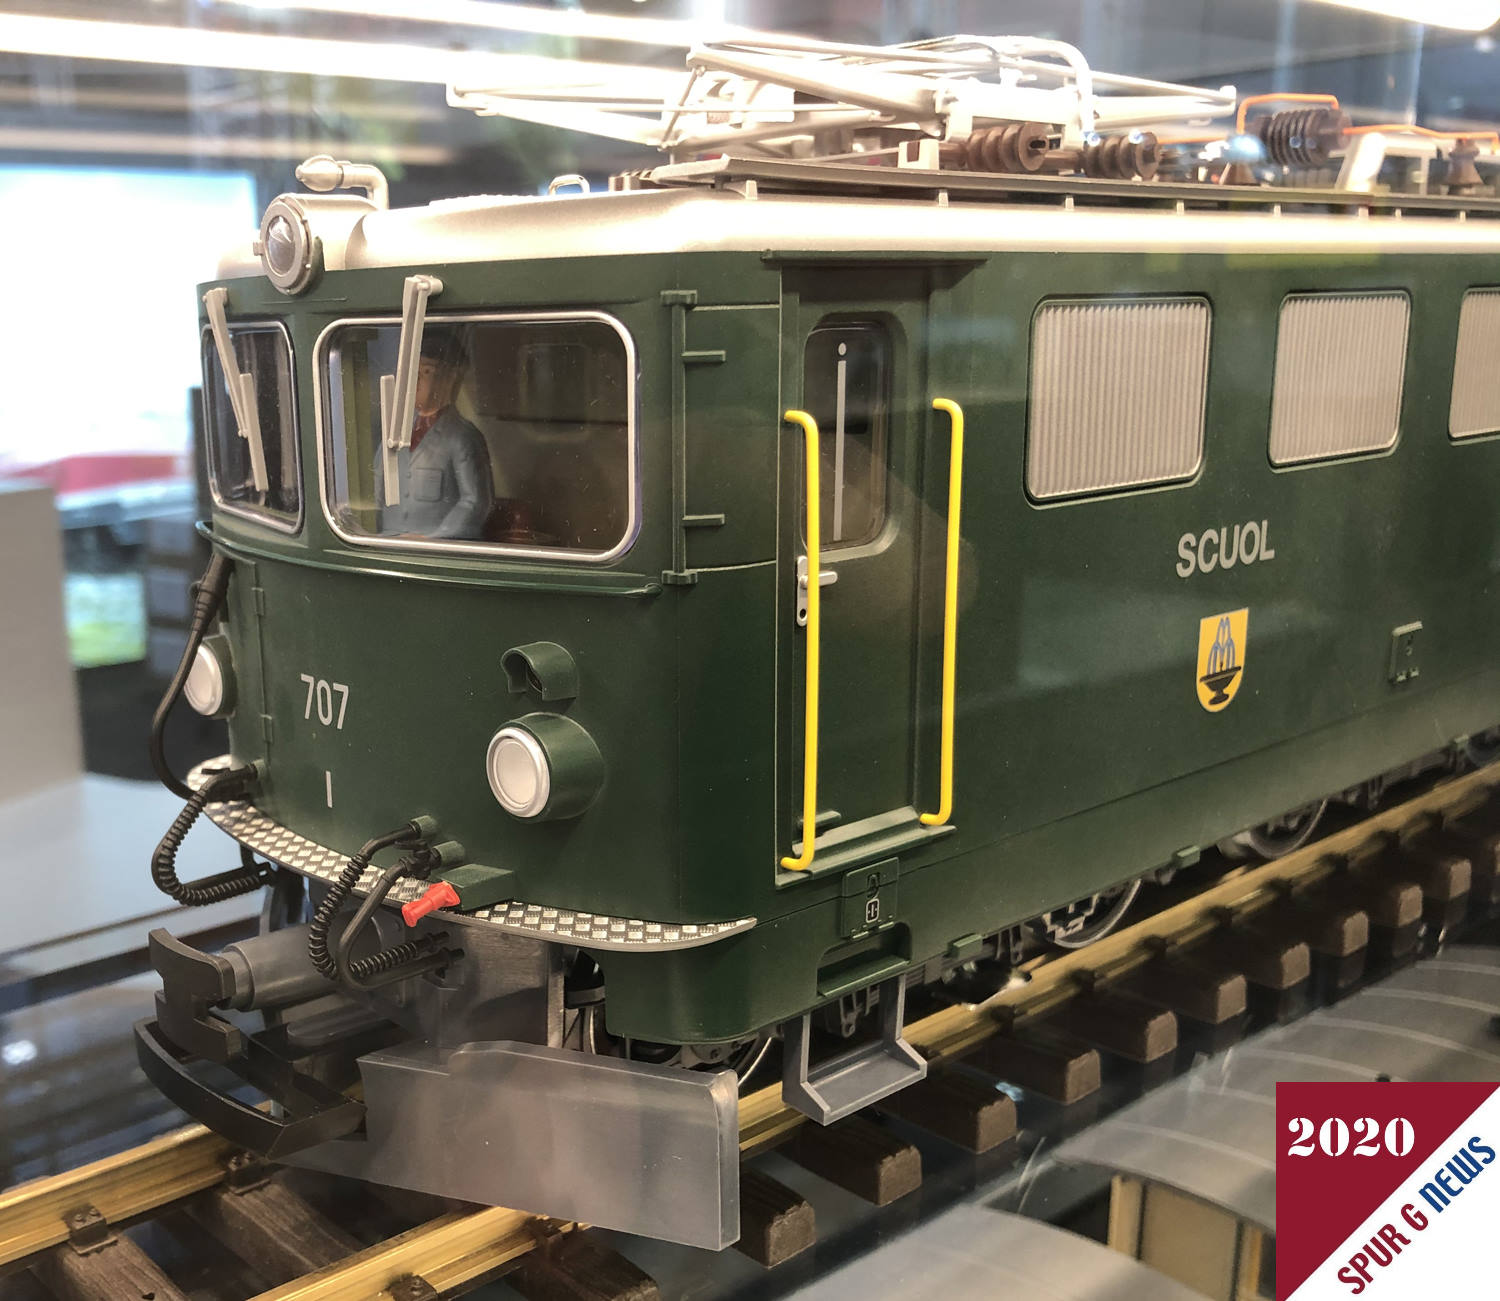 Als weitere Neuheit 2020 präsentiert LGB auf dem Märklinstand in Halle 7 die Ge 6/6 II der Rhätischen Bahn mit der Betriebsnummer 707 Scuol in der grünen Farbgebung mit Scherenstromabnehmern. 